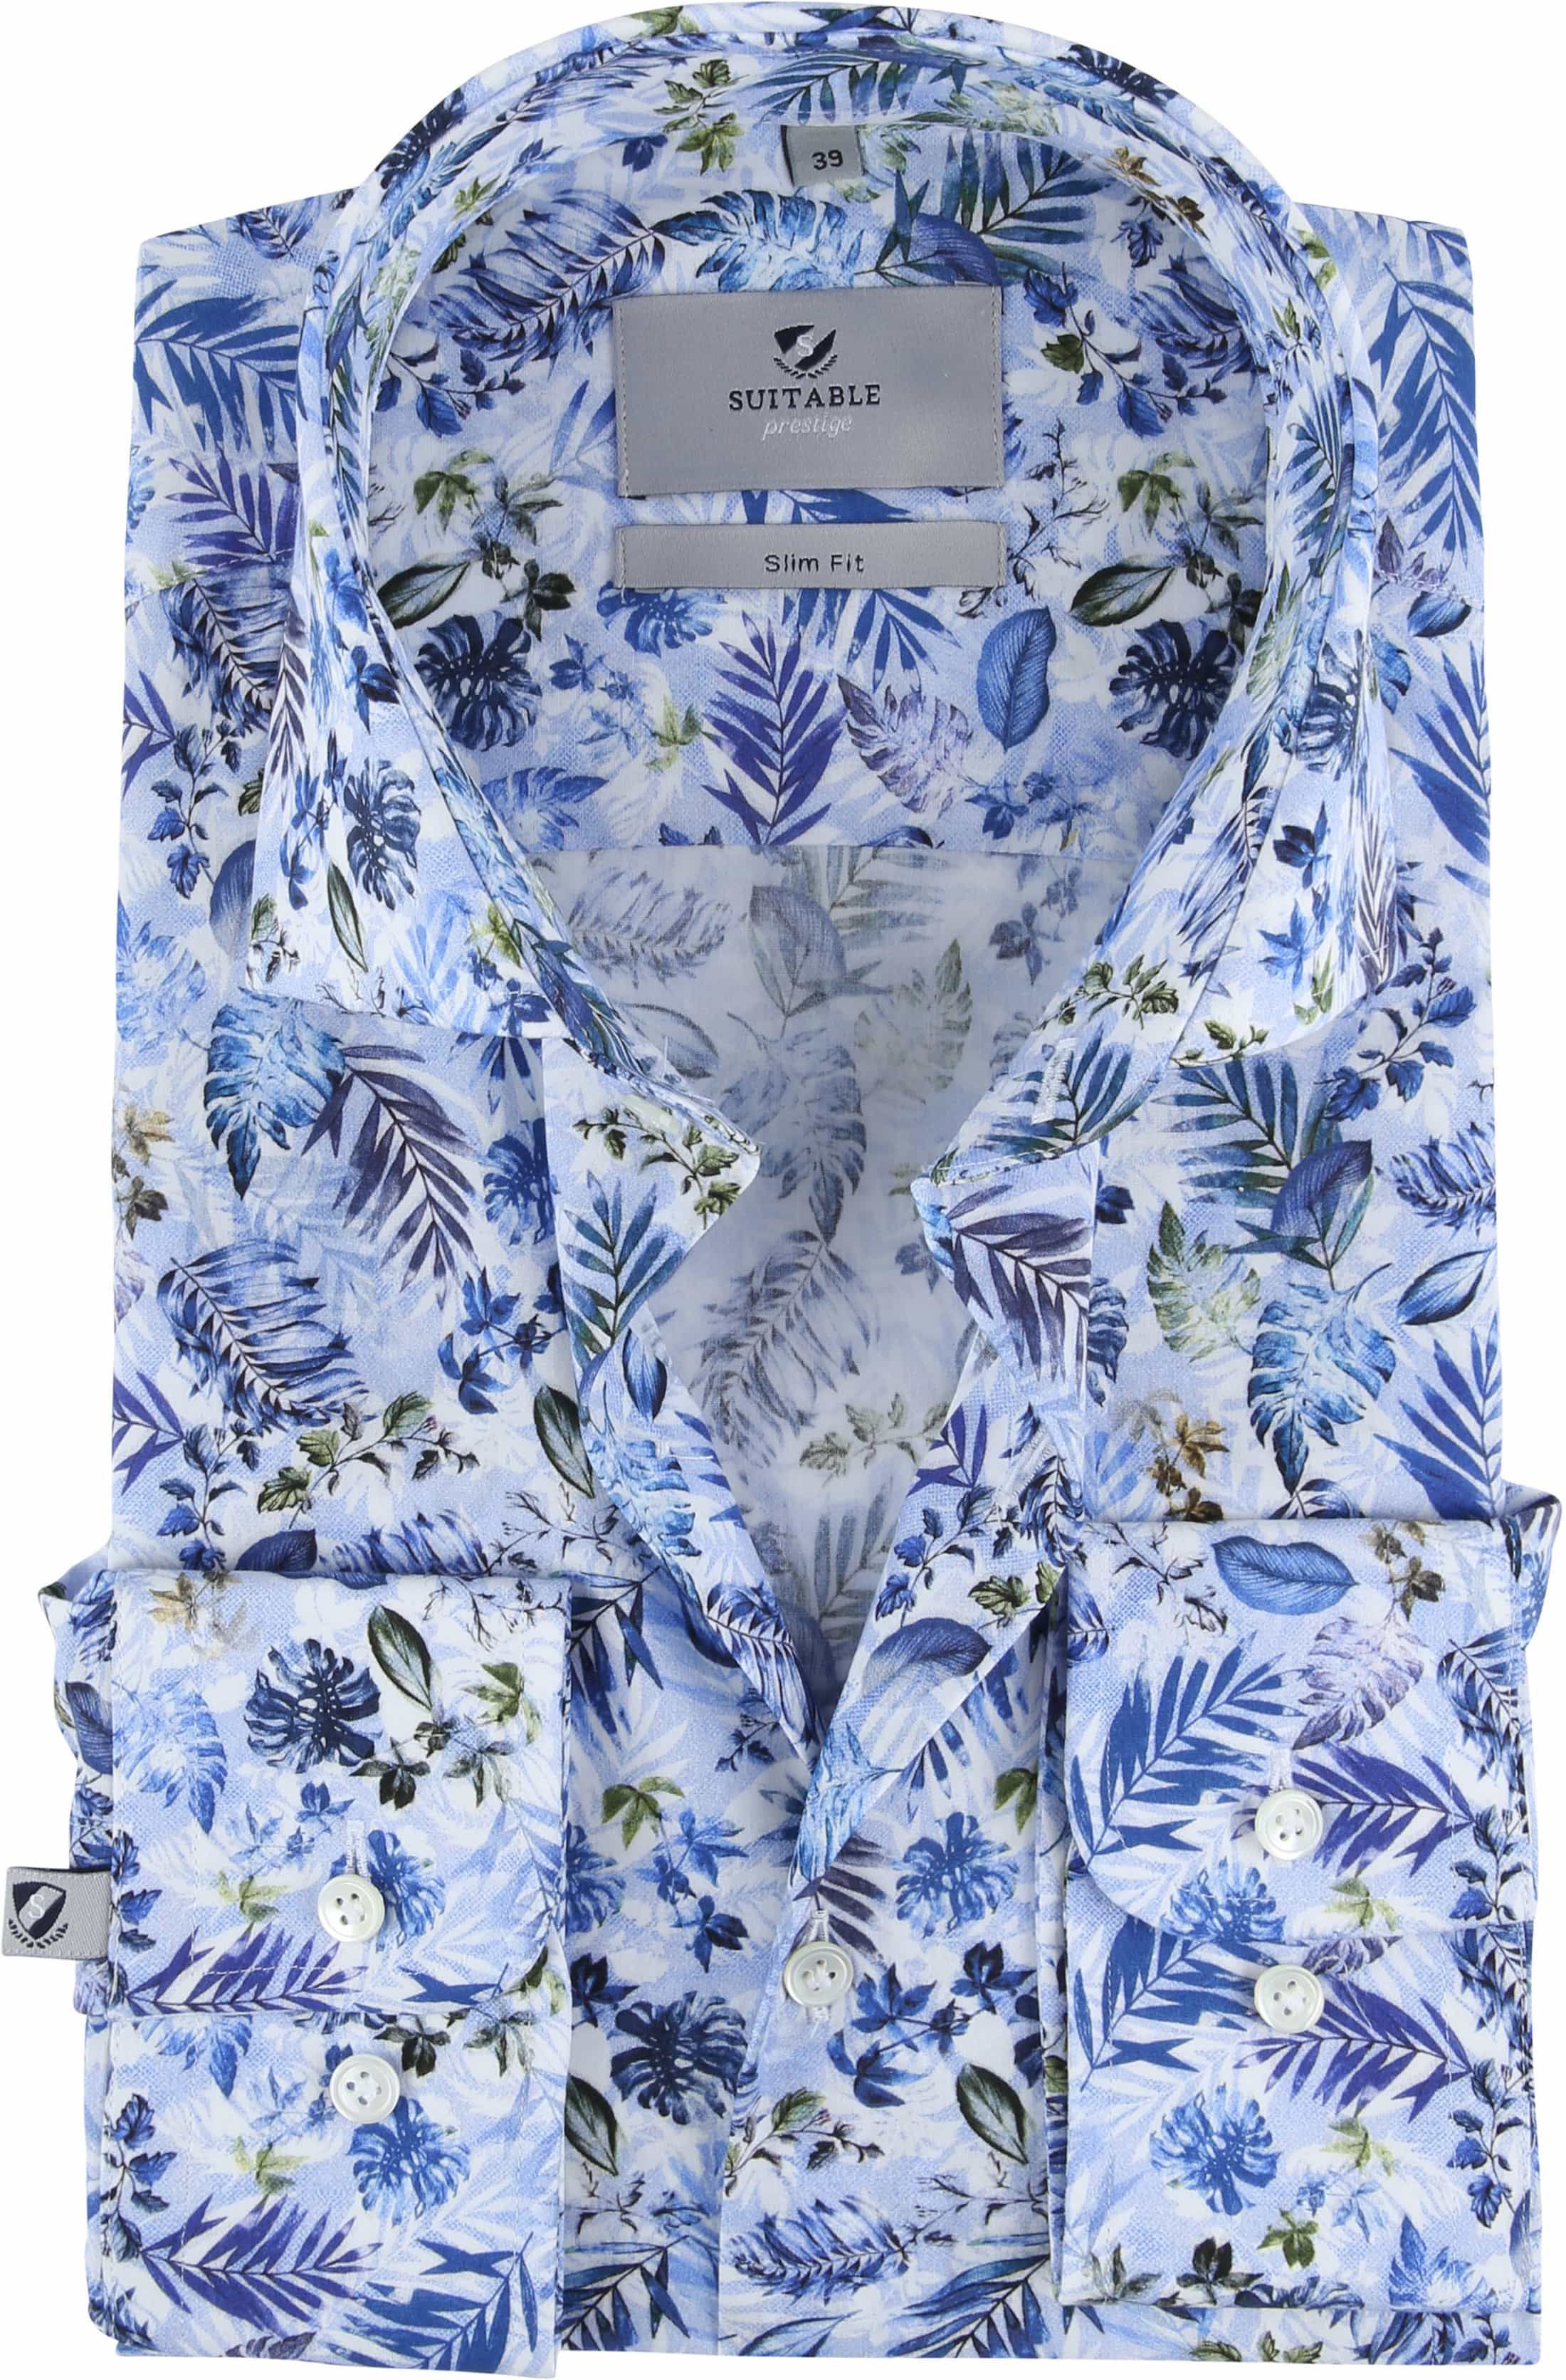 Suitable Prestige CAW Shirt Safari Blue size 15